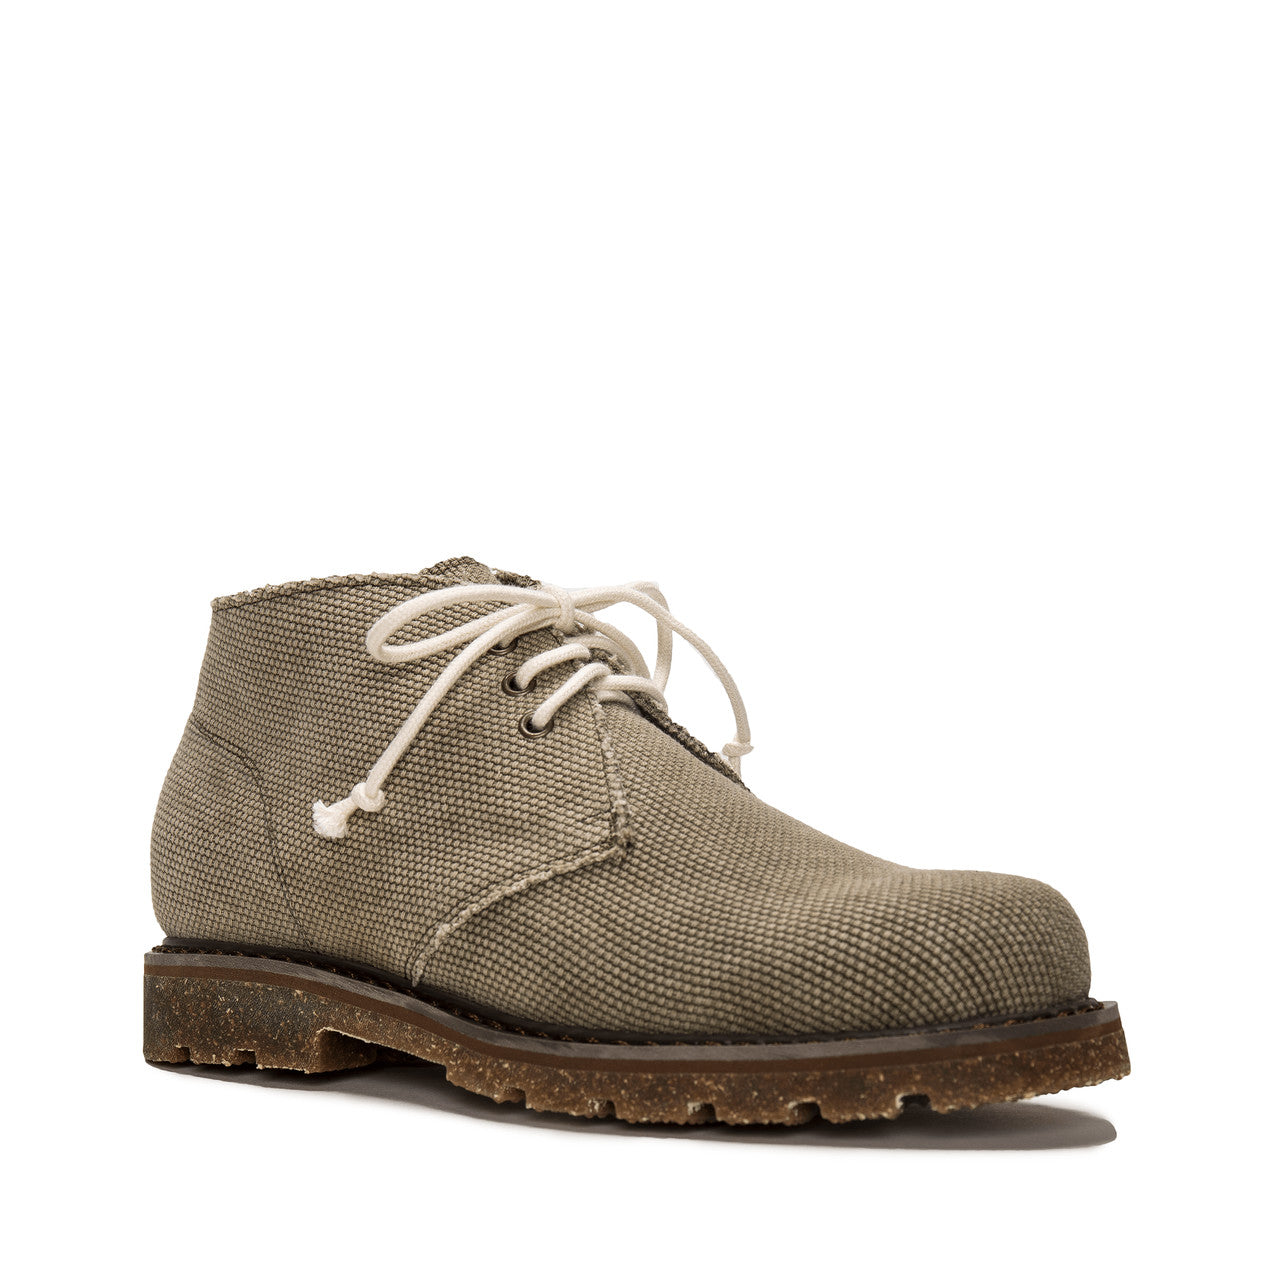 Peta - Green desert boots